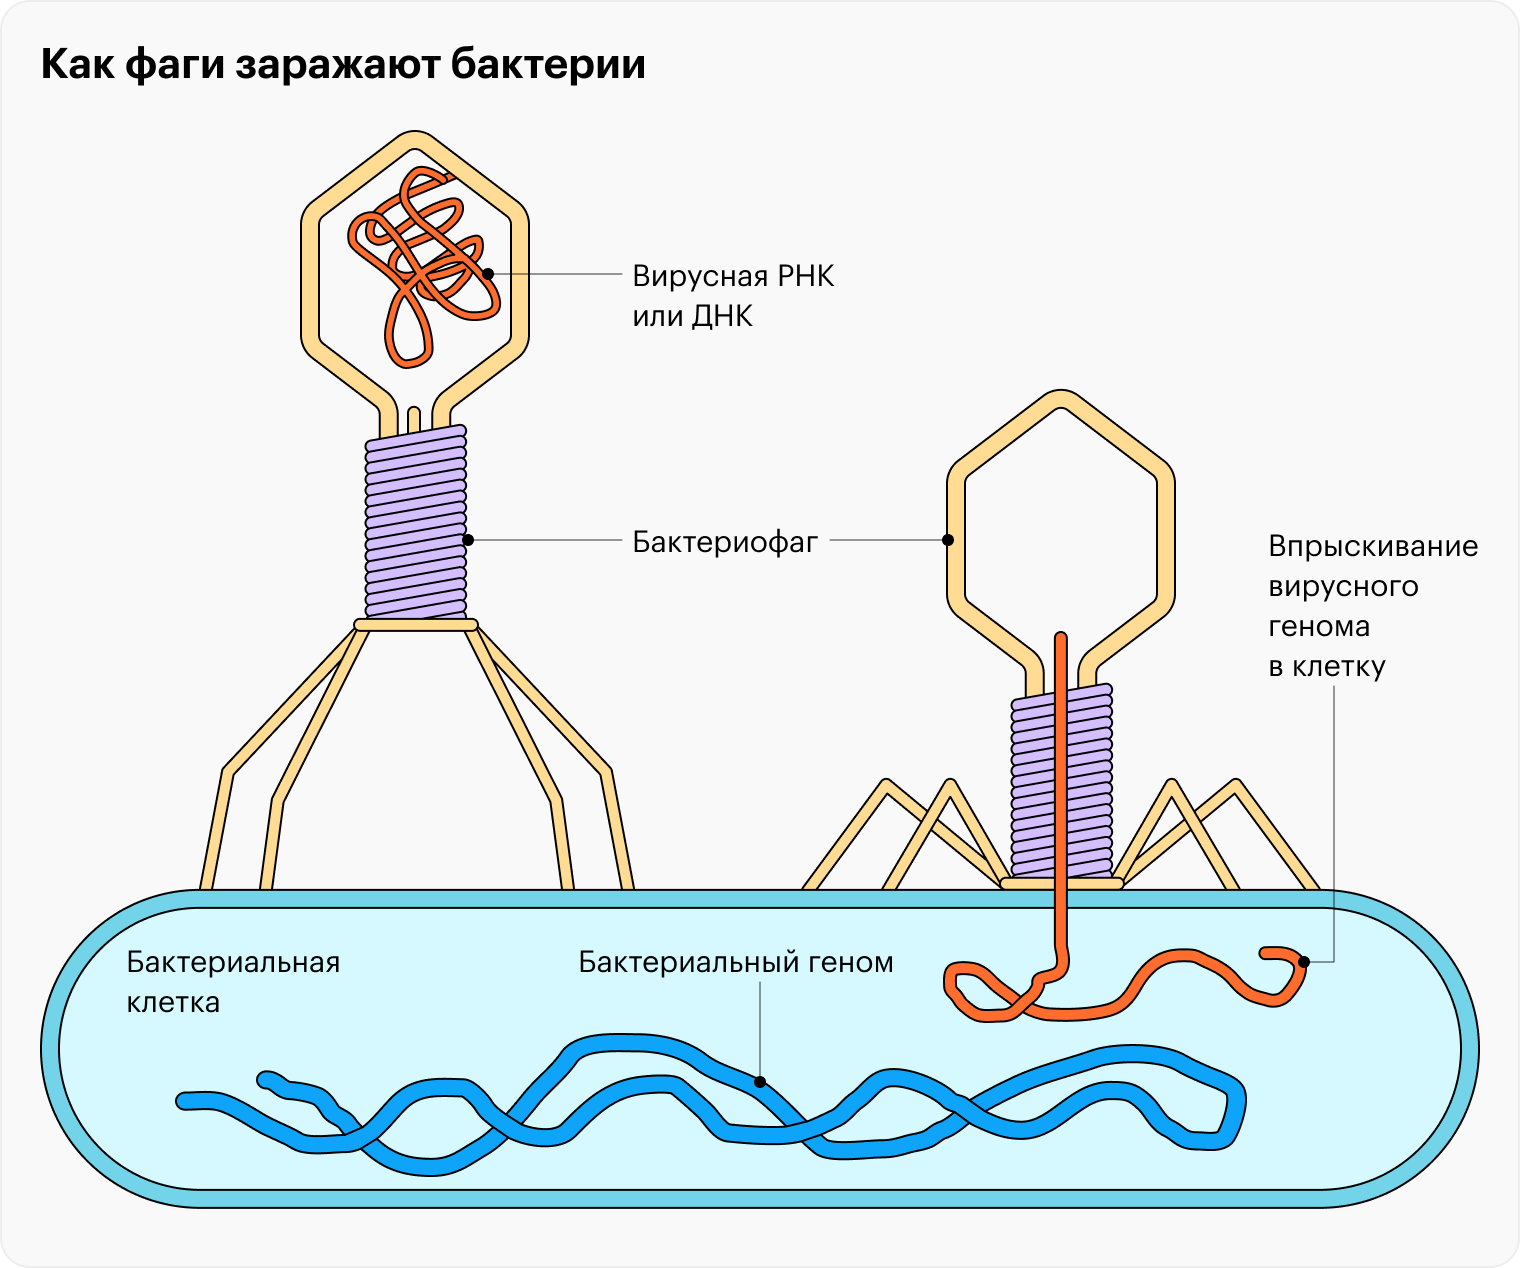 Бактериофаг похож на шприц, заполненный вирусным генетическим материалом — РНК или ДНК. Фаг прикрепляется к поверхности бактерии и впрыскивает в нее свой генетический материал, который потом встраивается в бактериальный геном